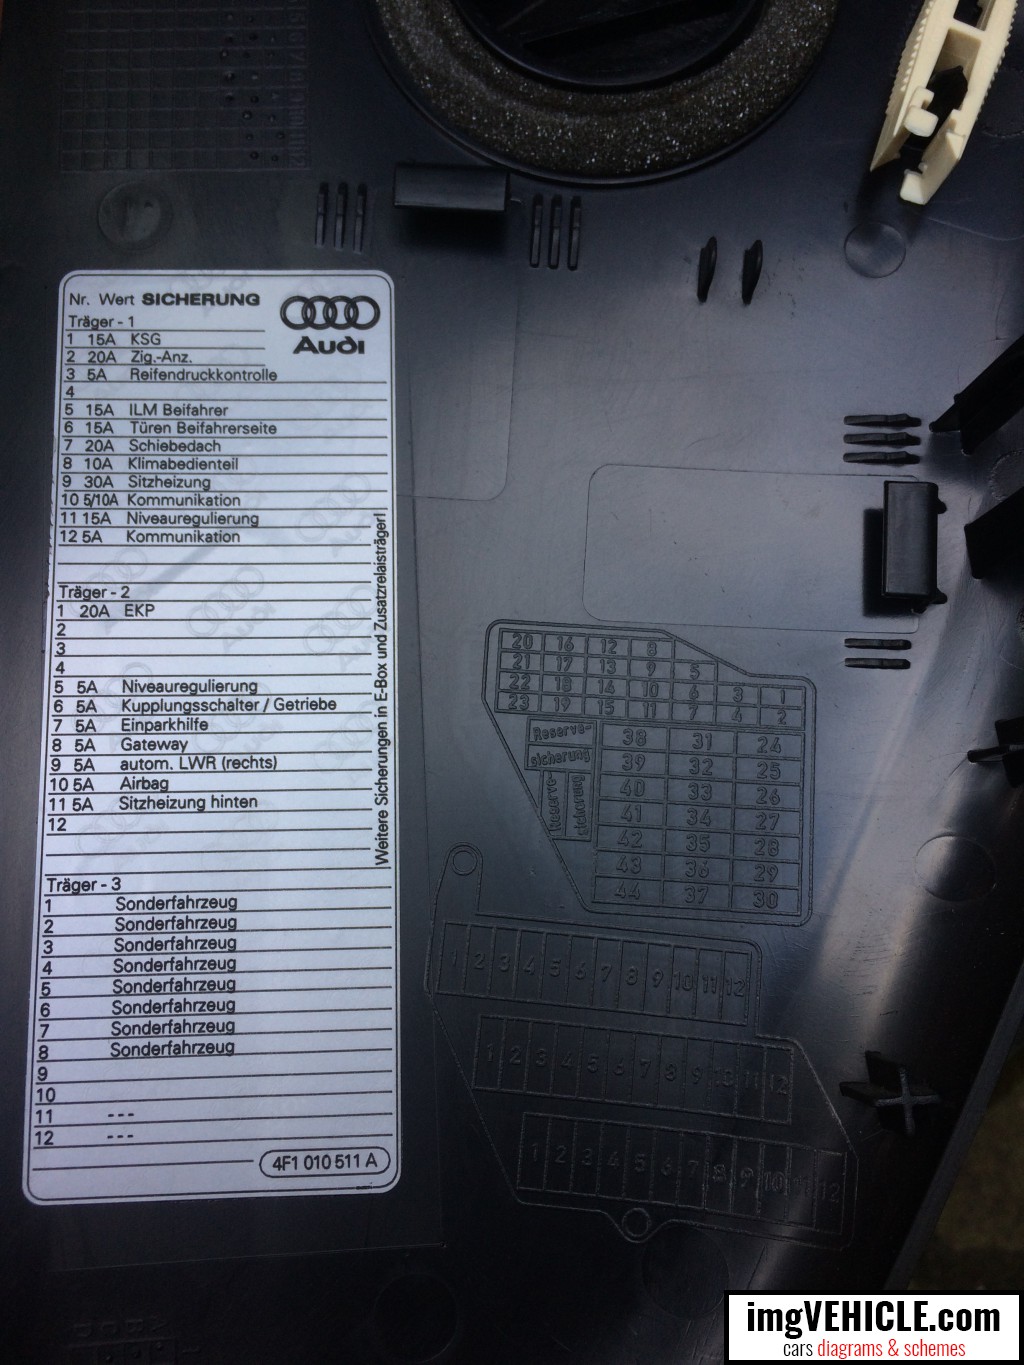 bmwwiringdiagram: 1996 Audi A6 Fuse Box Location